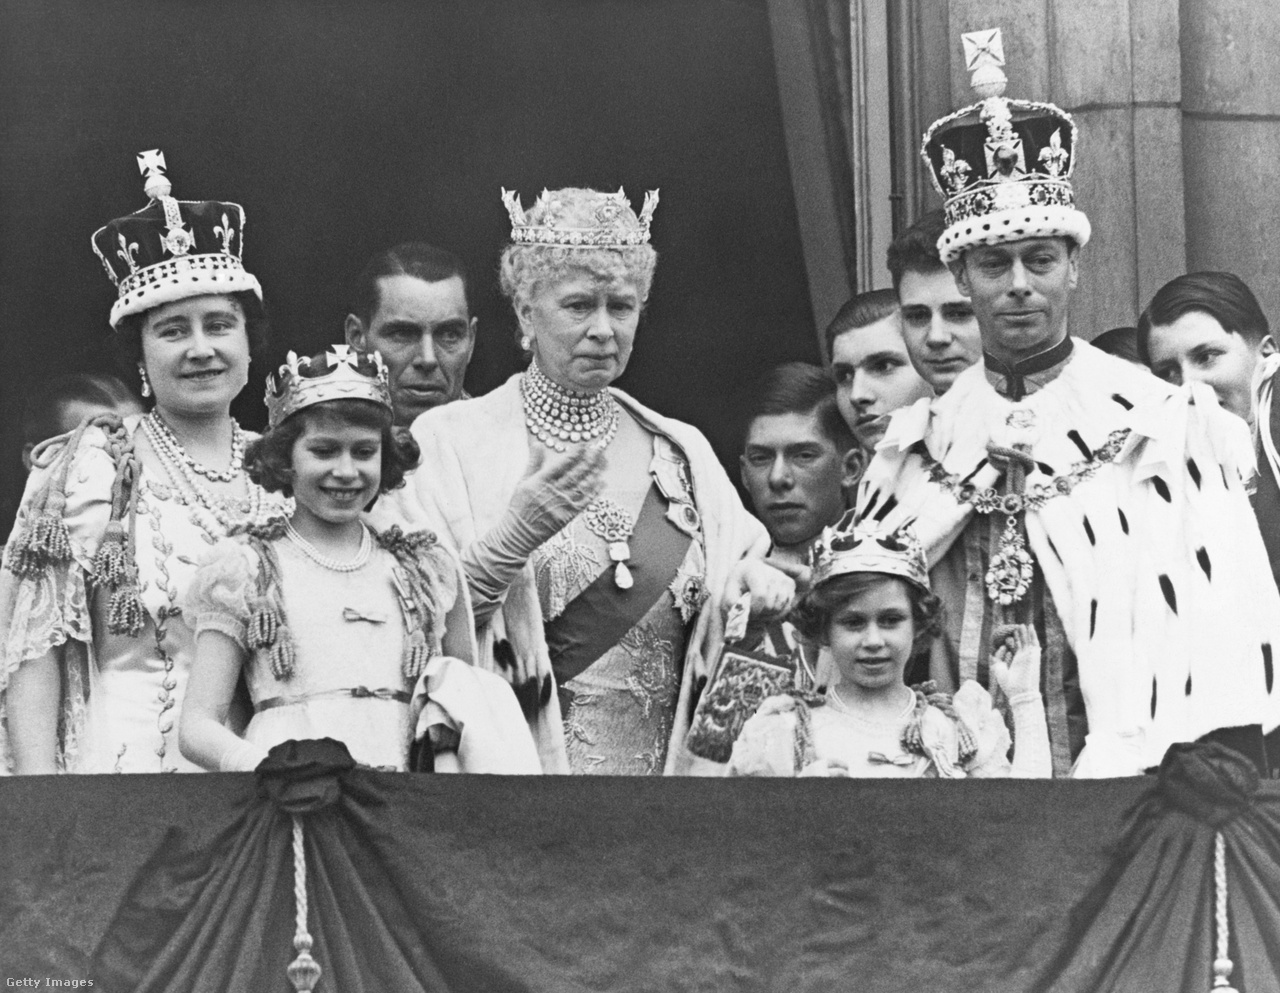 A Buckingham-palota erkélyén gyűlt össze a királyi család 1937. május 12-én VI. György király koronázása után. A képen balról jobbra: Erzsébet anyakirályné, Erzsébet hercegnő, Mária királyné, Margit hercegnő és VI. György király